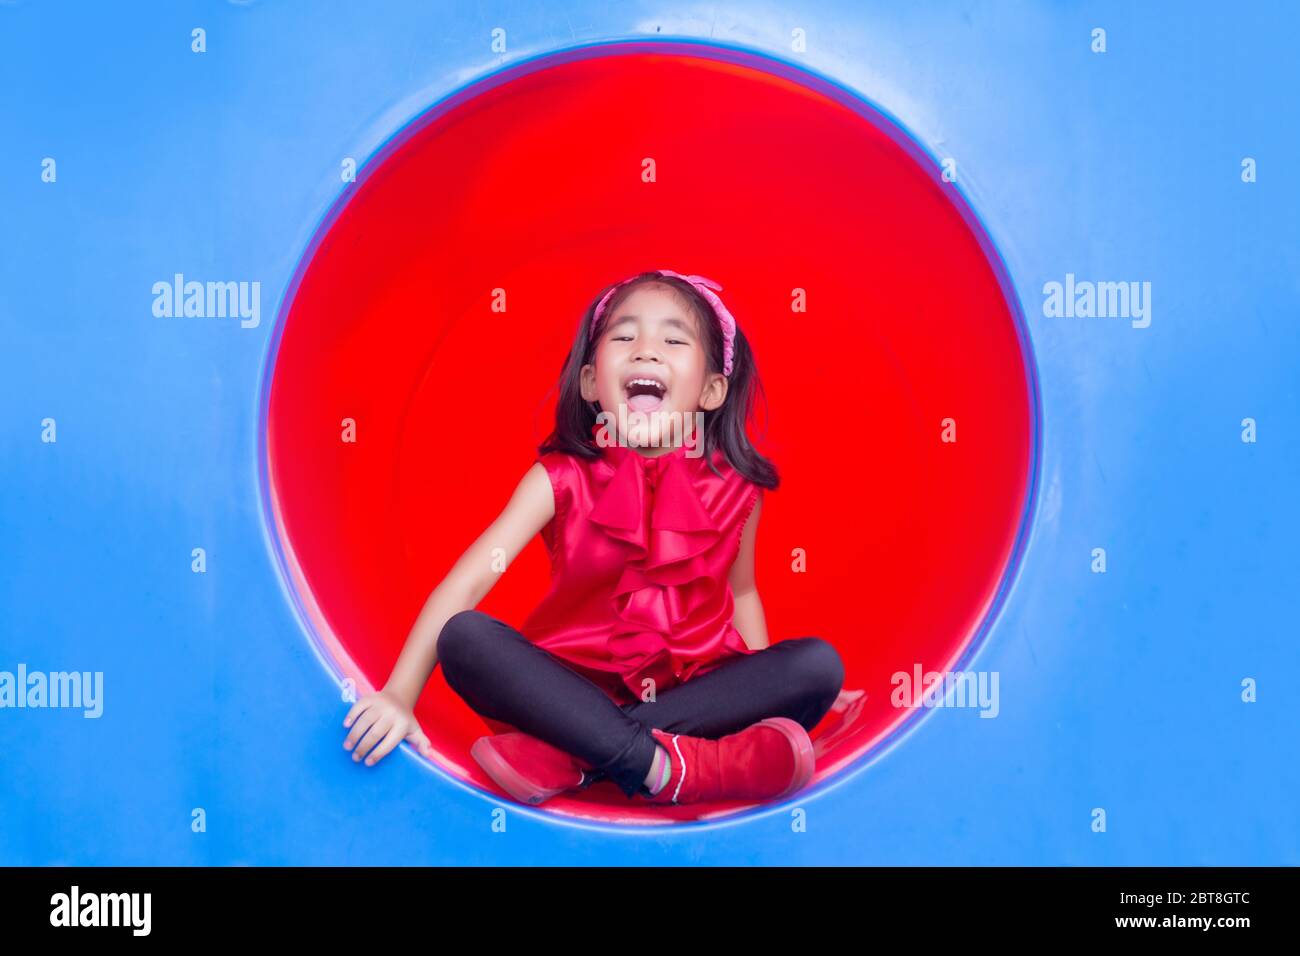 souriez les enfants asiatiques sur le cercle de parc de jeux en plastique Banque D'Images